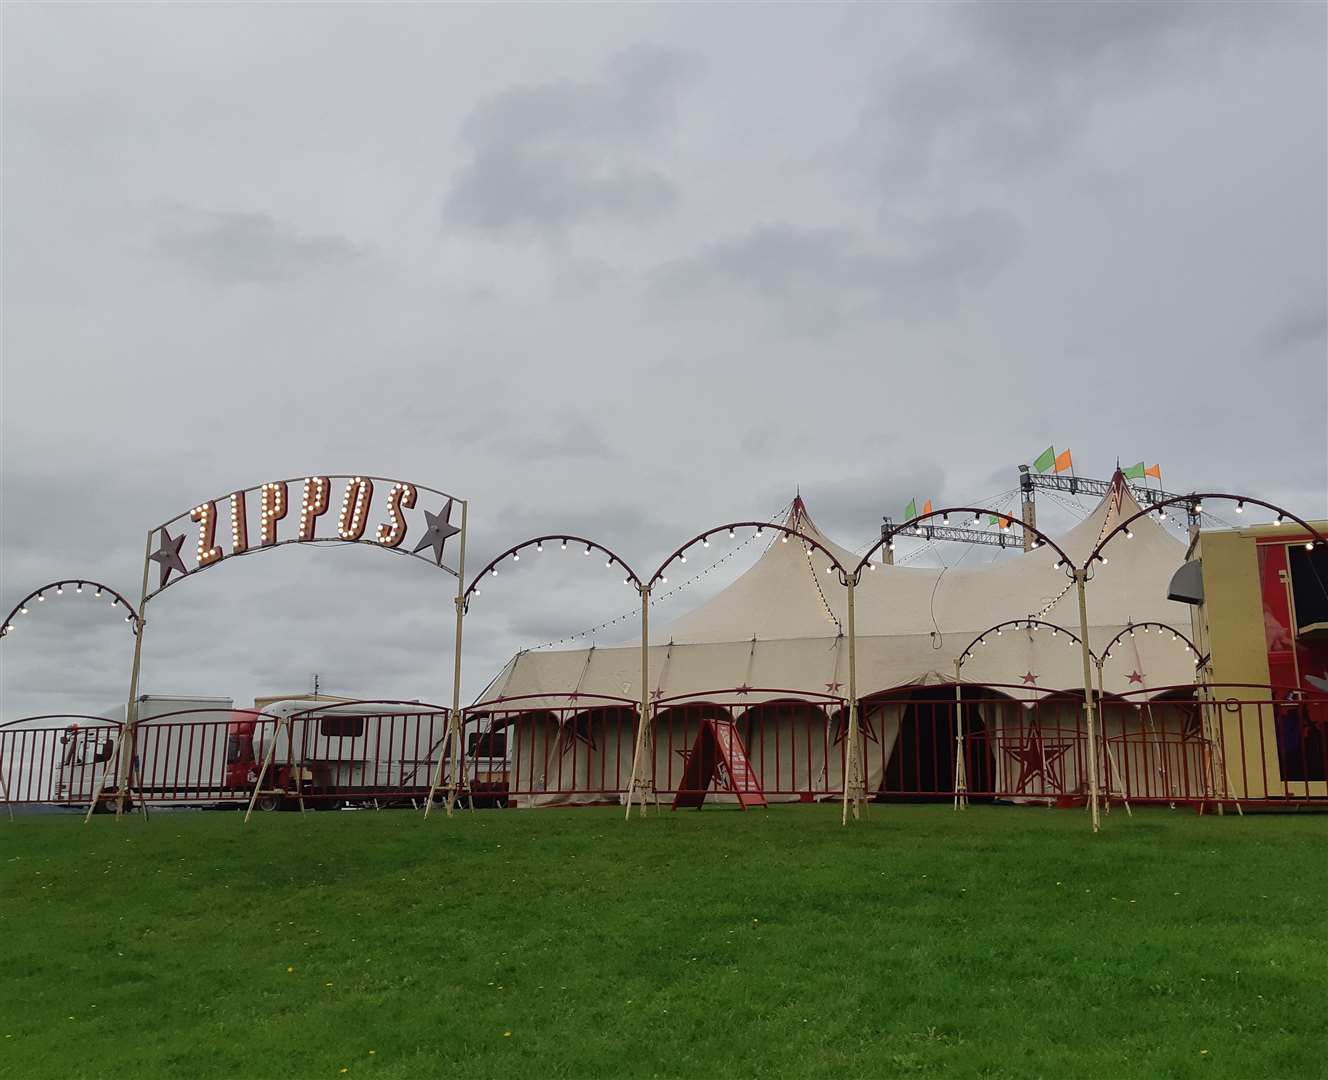 Zippos Circus regularly performs in Kent